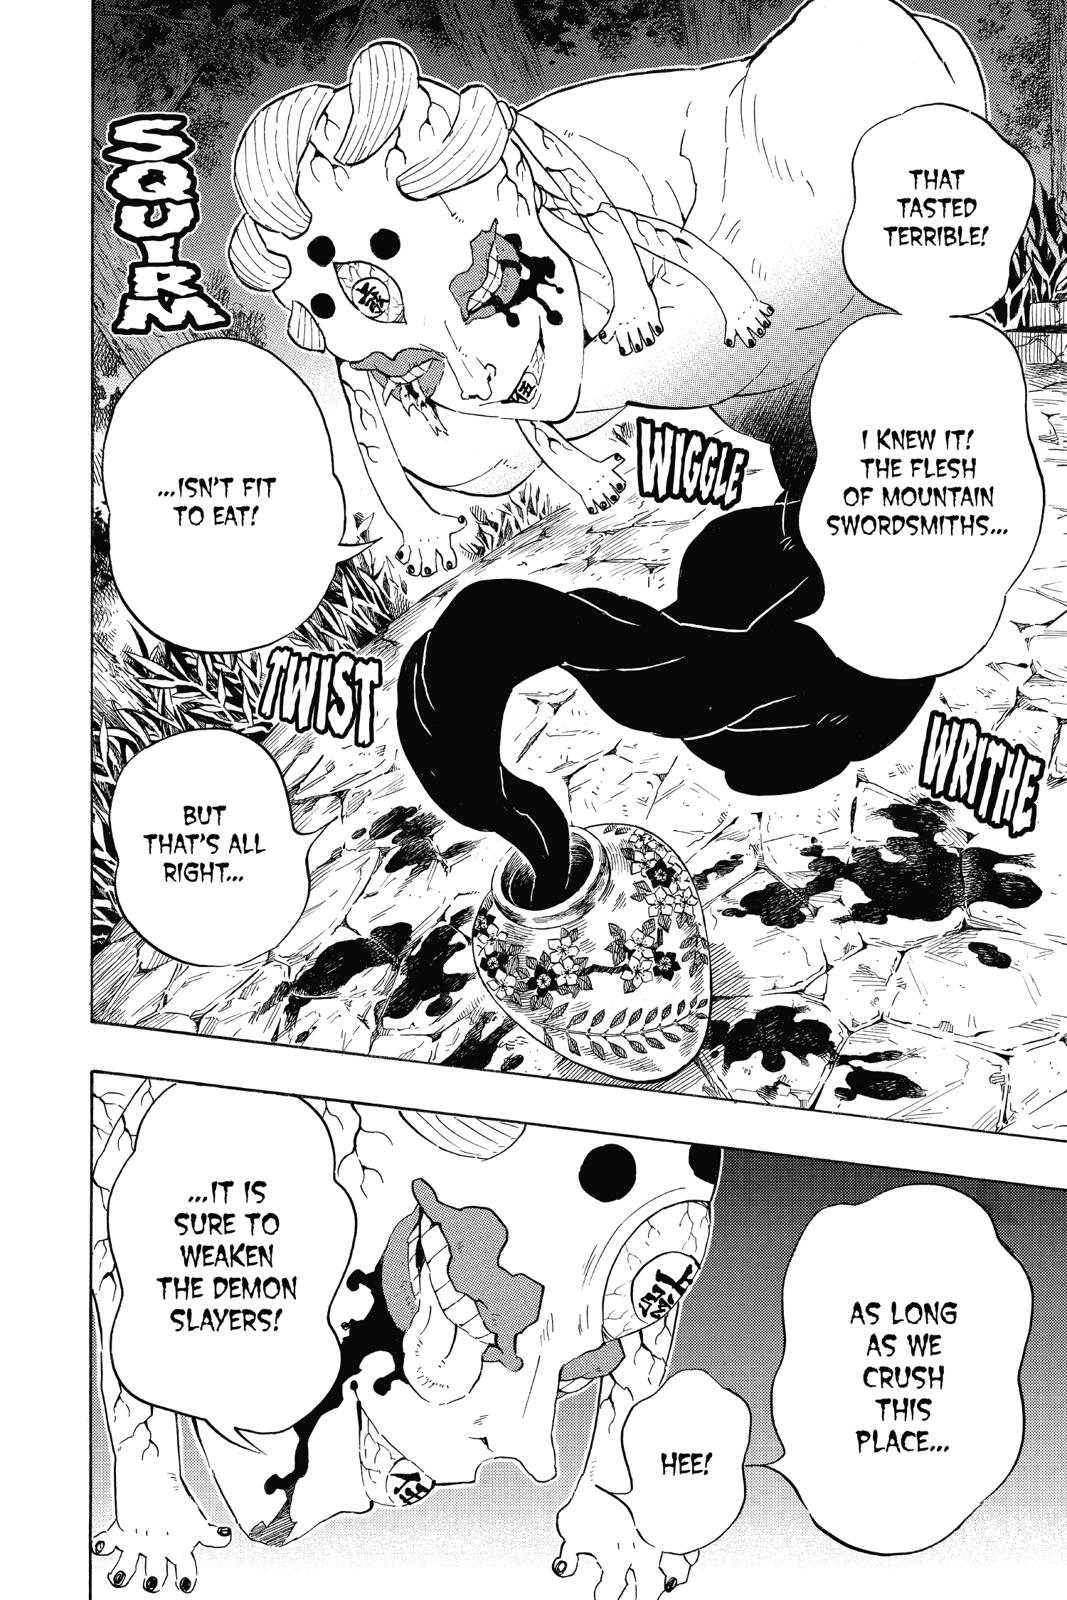 Demon Slayer Manga Manga Chapter - 105 - image 11